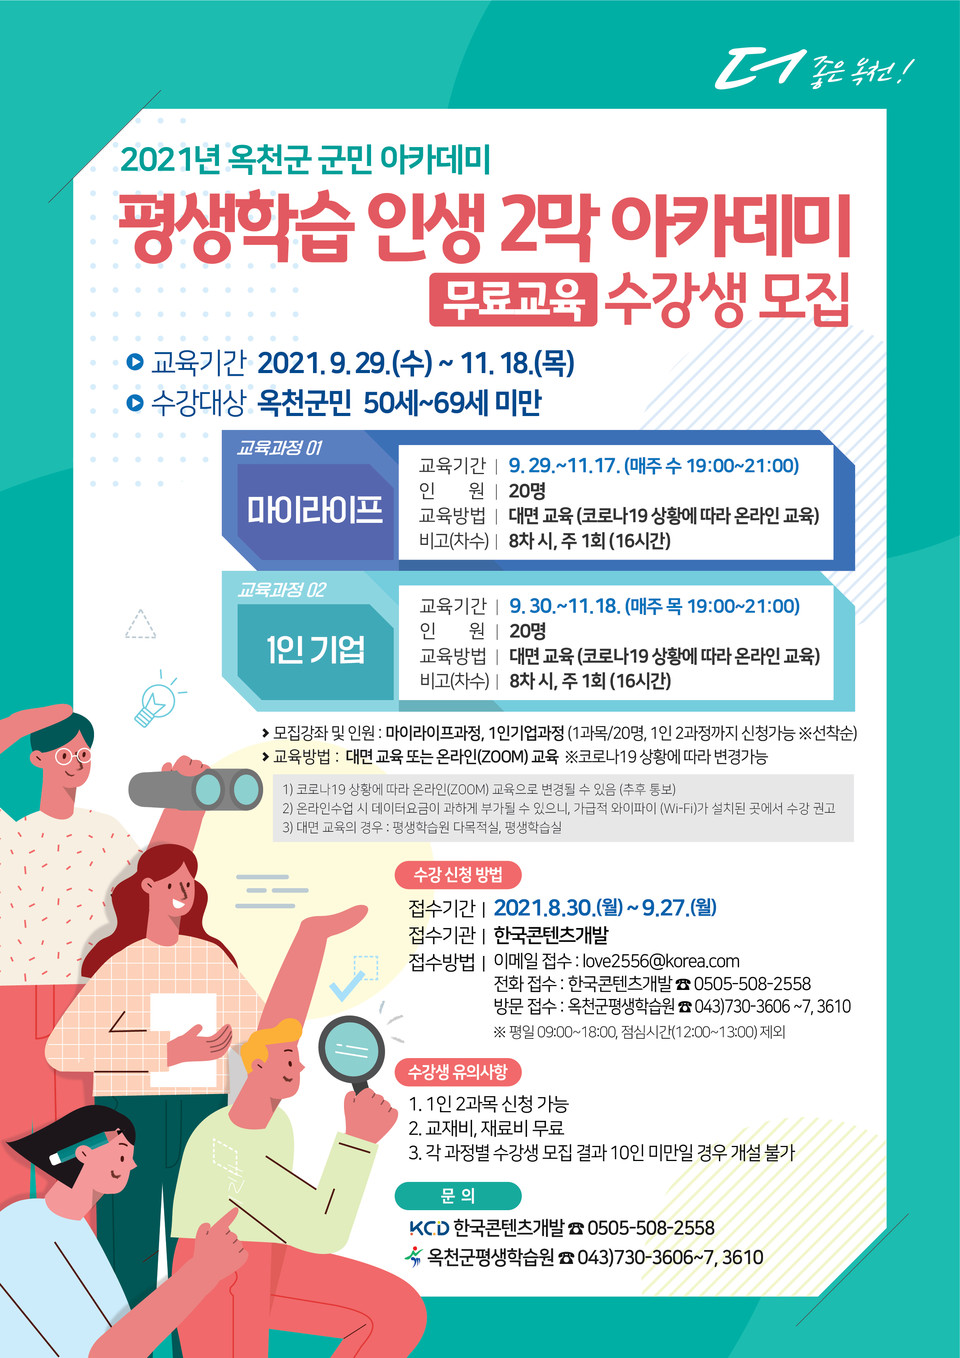 평생학습 인생2막 아카데미 수강생 모집 홍보 포스터